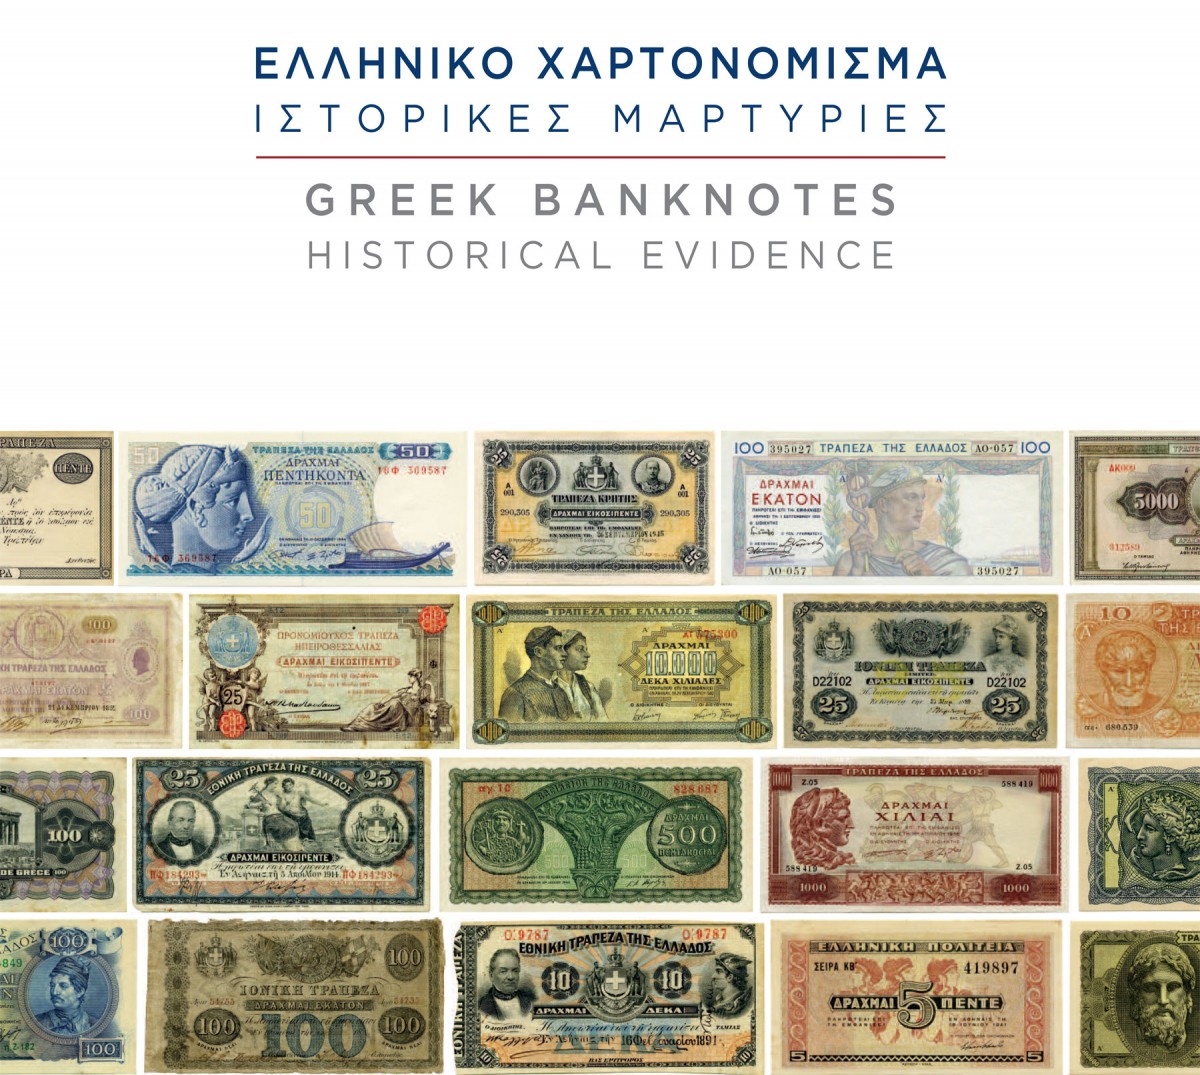 Η Συλλογή του Μουσείου Χαρτονομισμάτων περιλαμβάνει τα χαρτονομίσματα που κυκλοφόρησαν καθ’ όλη την ιστορία του νεοτέρου Ελληνικού Κράτους.